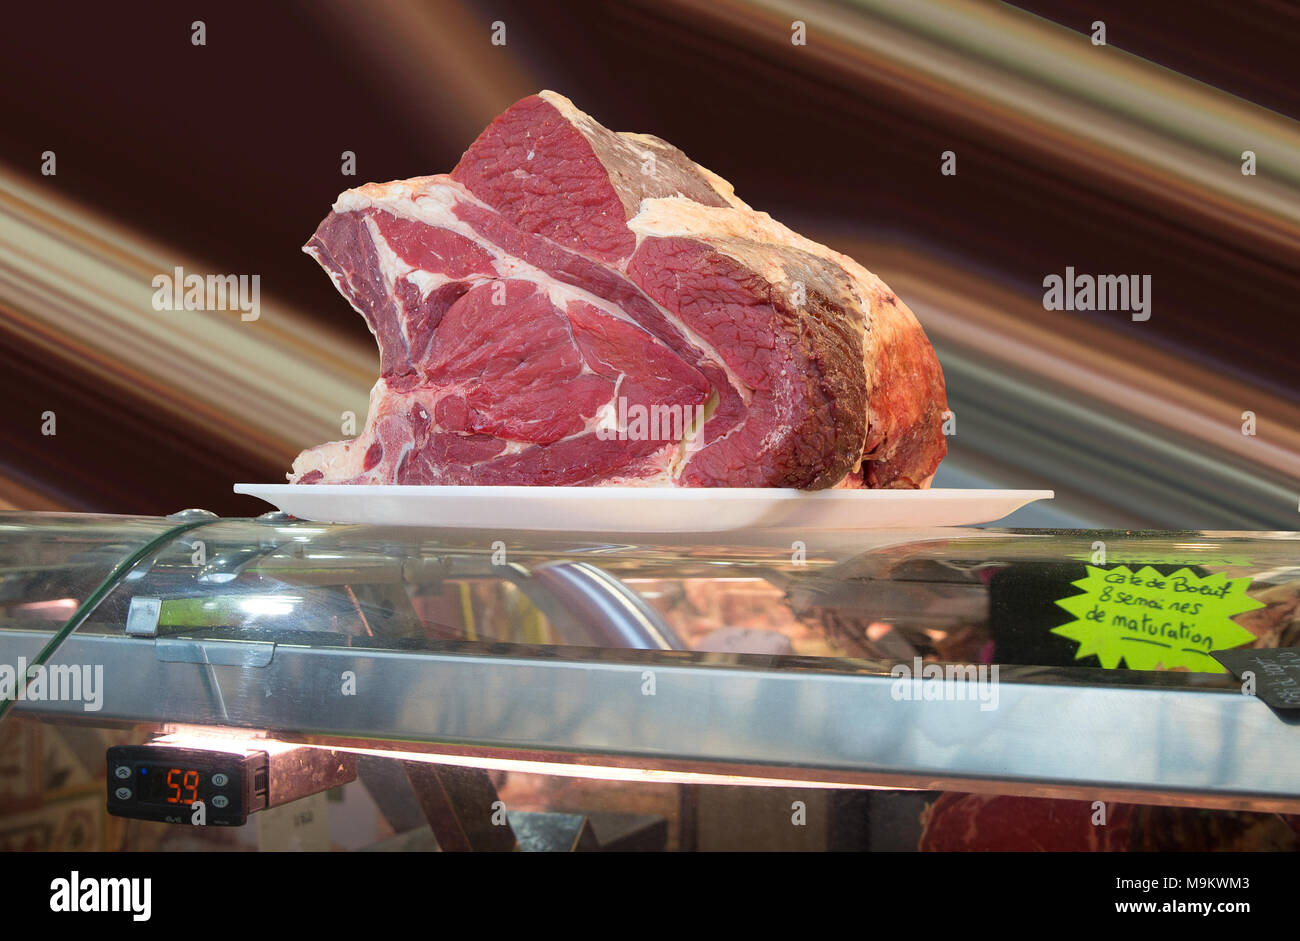 Un taglio di carne di manzo visualizzati in corrispondenza di una macelleria a Parigi in Francia - Il segno dichiarato Carni bovine rating 8 settimane di maturazione " cate de boeuf 8 semai nes de maturati Foto Stock